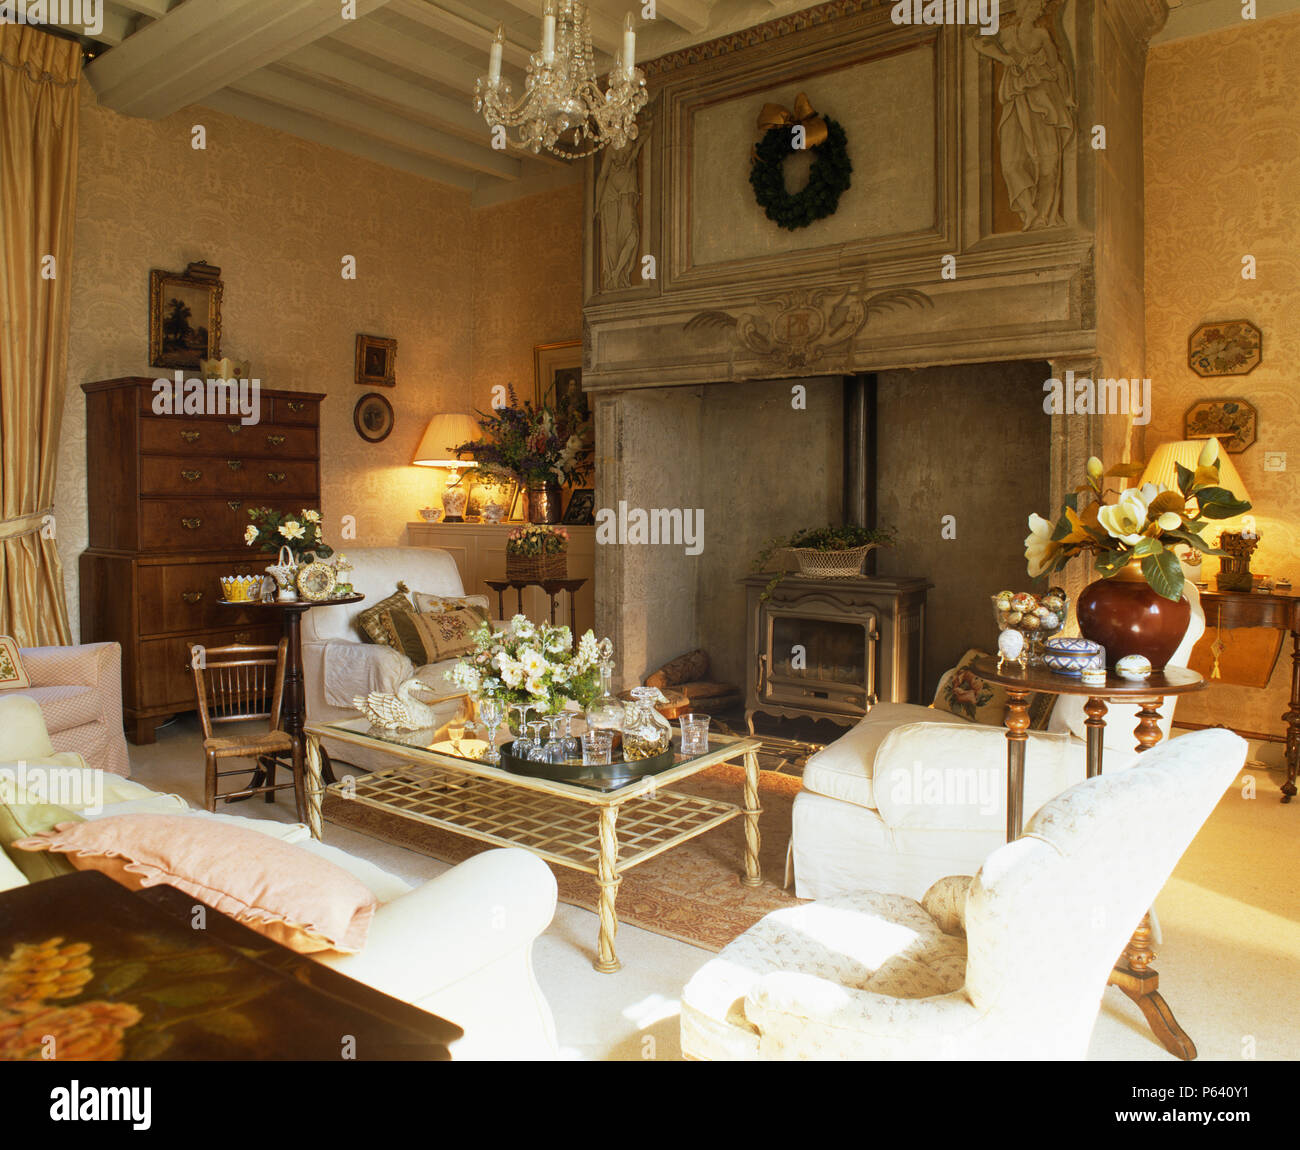 Chimenea de madera tallados ornamentados con estufa de leña en el país francés salón con sofás blancos y muebles antiguos Foto de stock